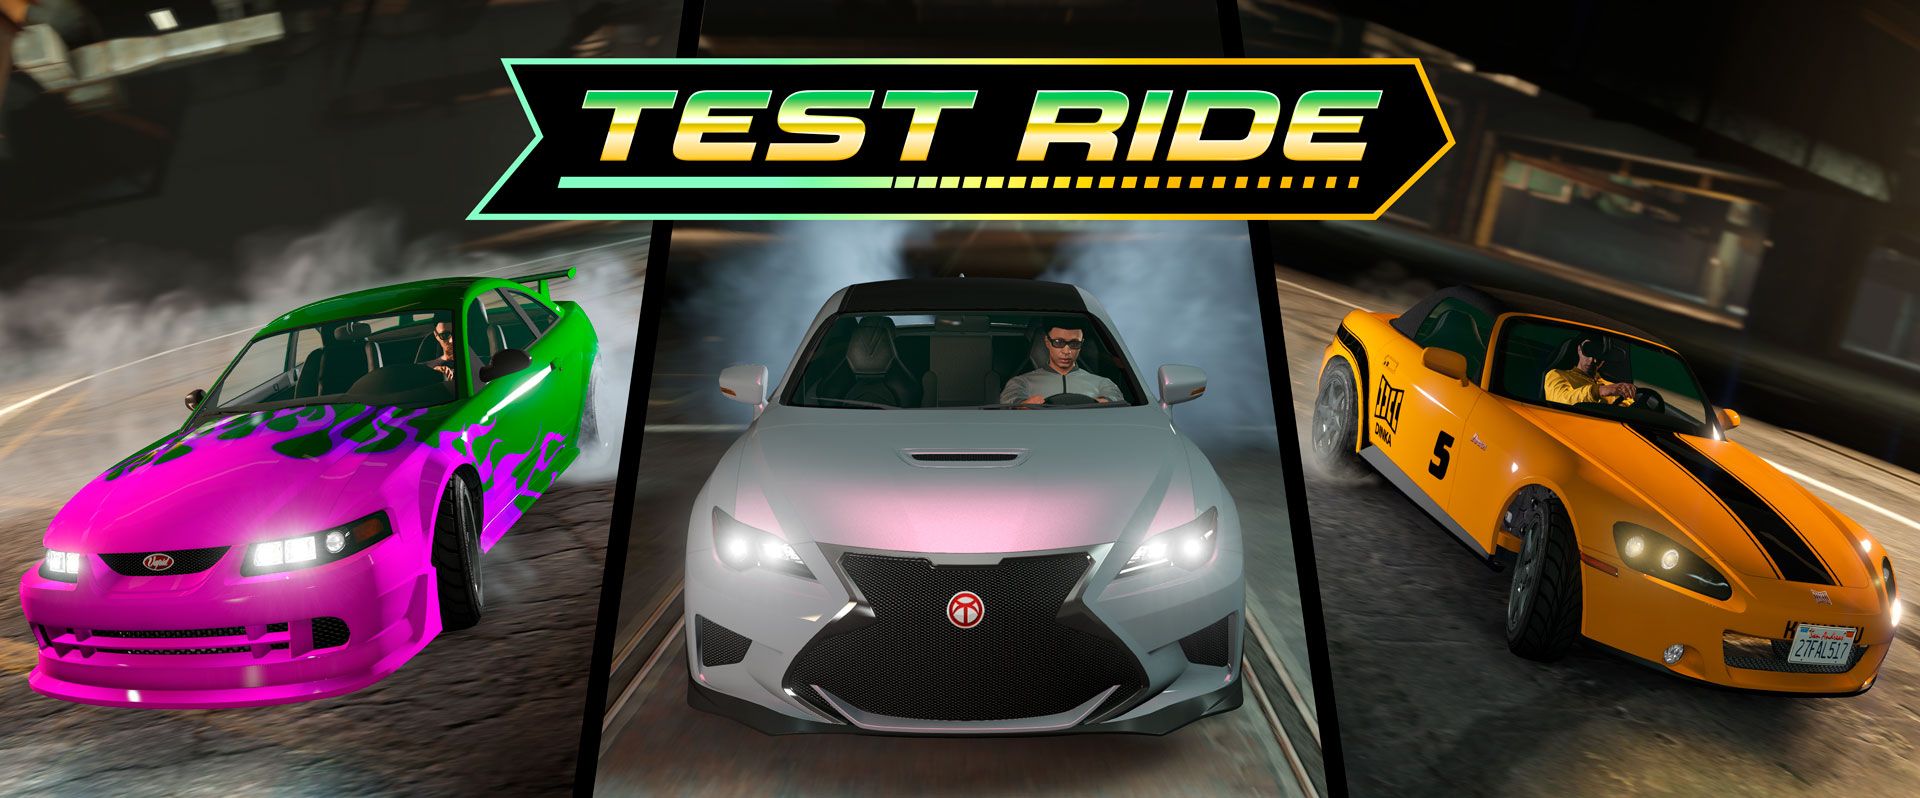 Gta Online 8 5 2021 Rides Test